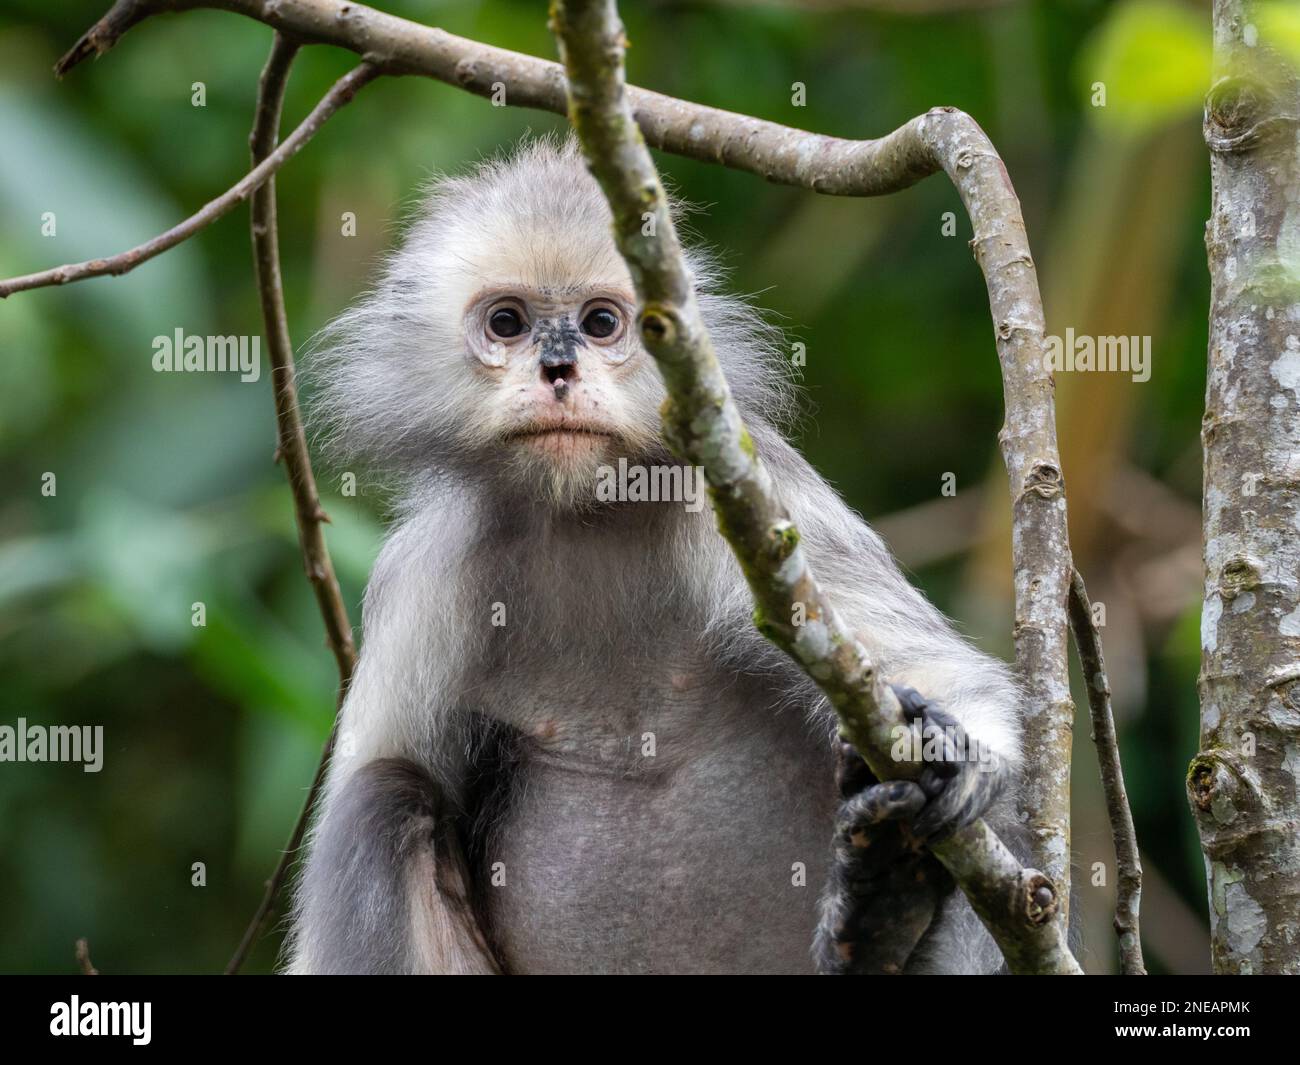 Mono de hoja oscura, Trachypithecus obscurus, un hermoso mono del sudeste asiático Foto de stock